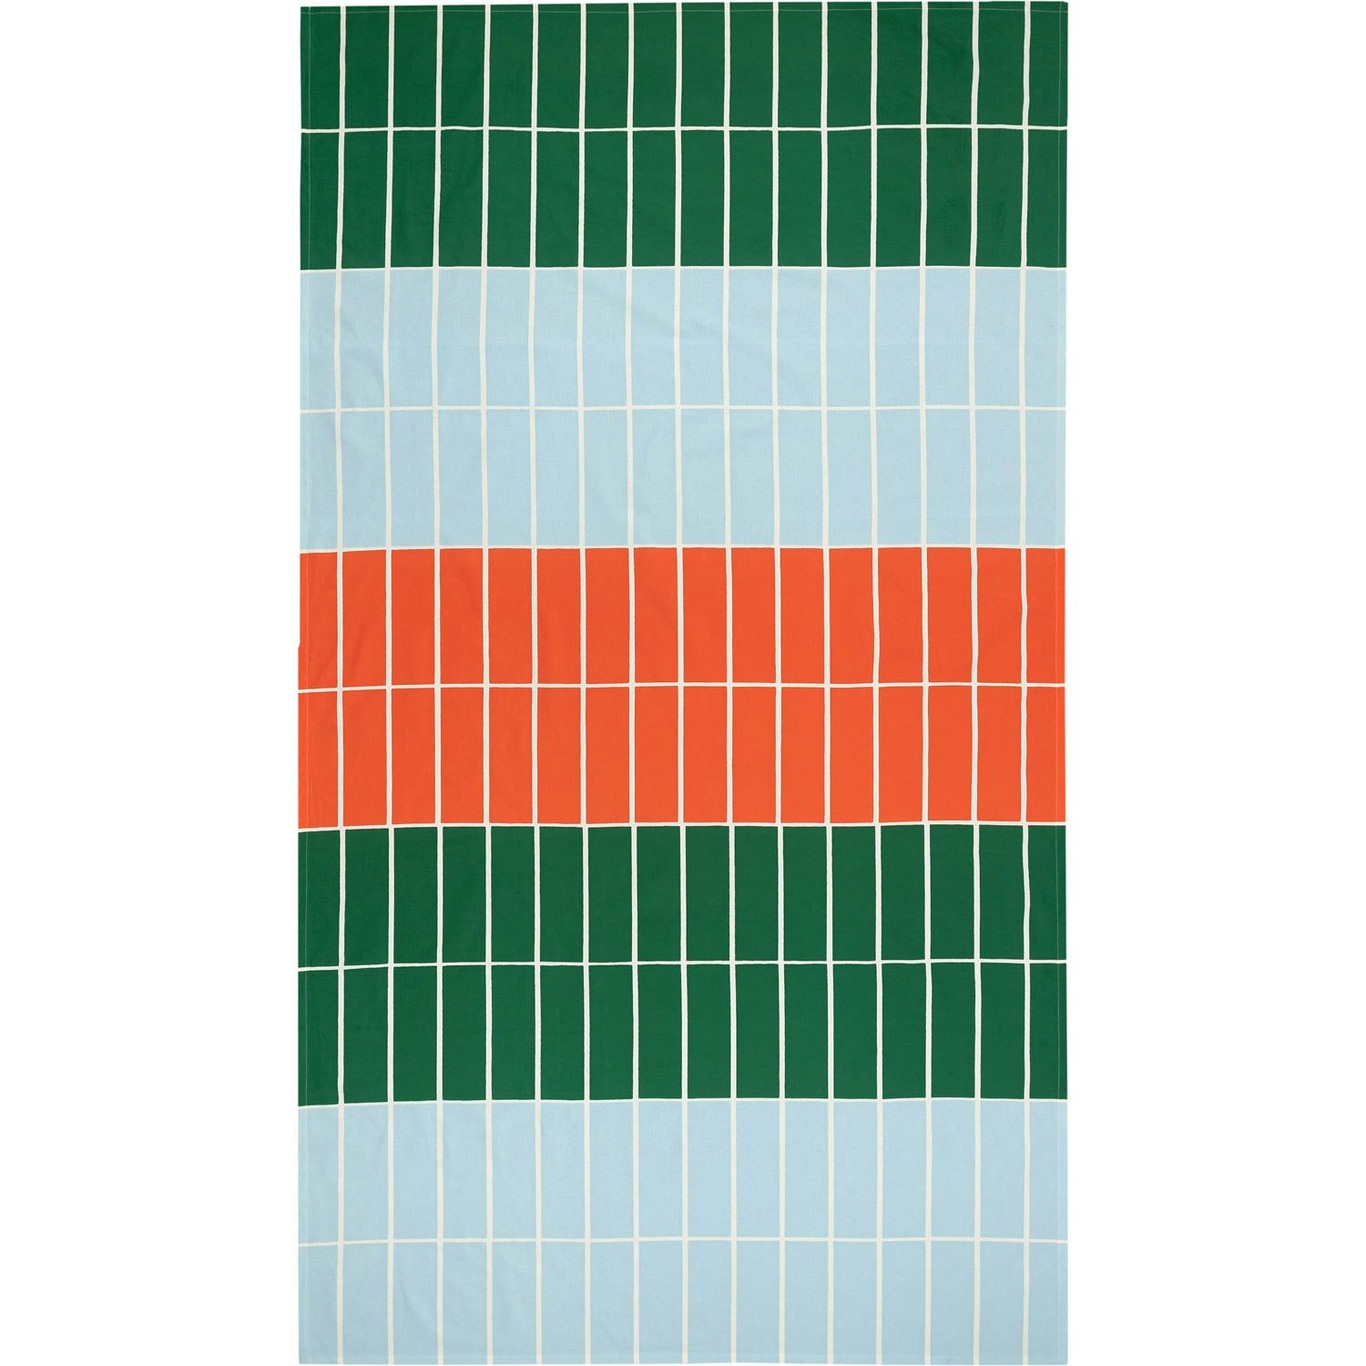 Tiiliskivi Duk 135x245 cm, Oransje / Lyseblå / Grønn